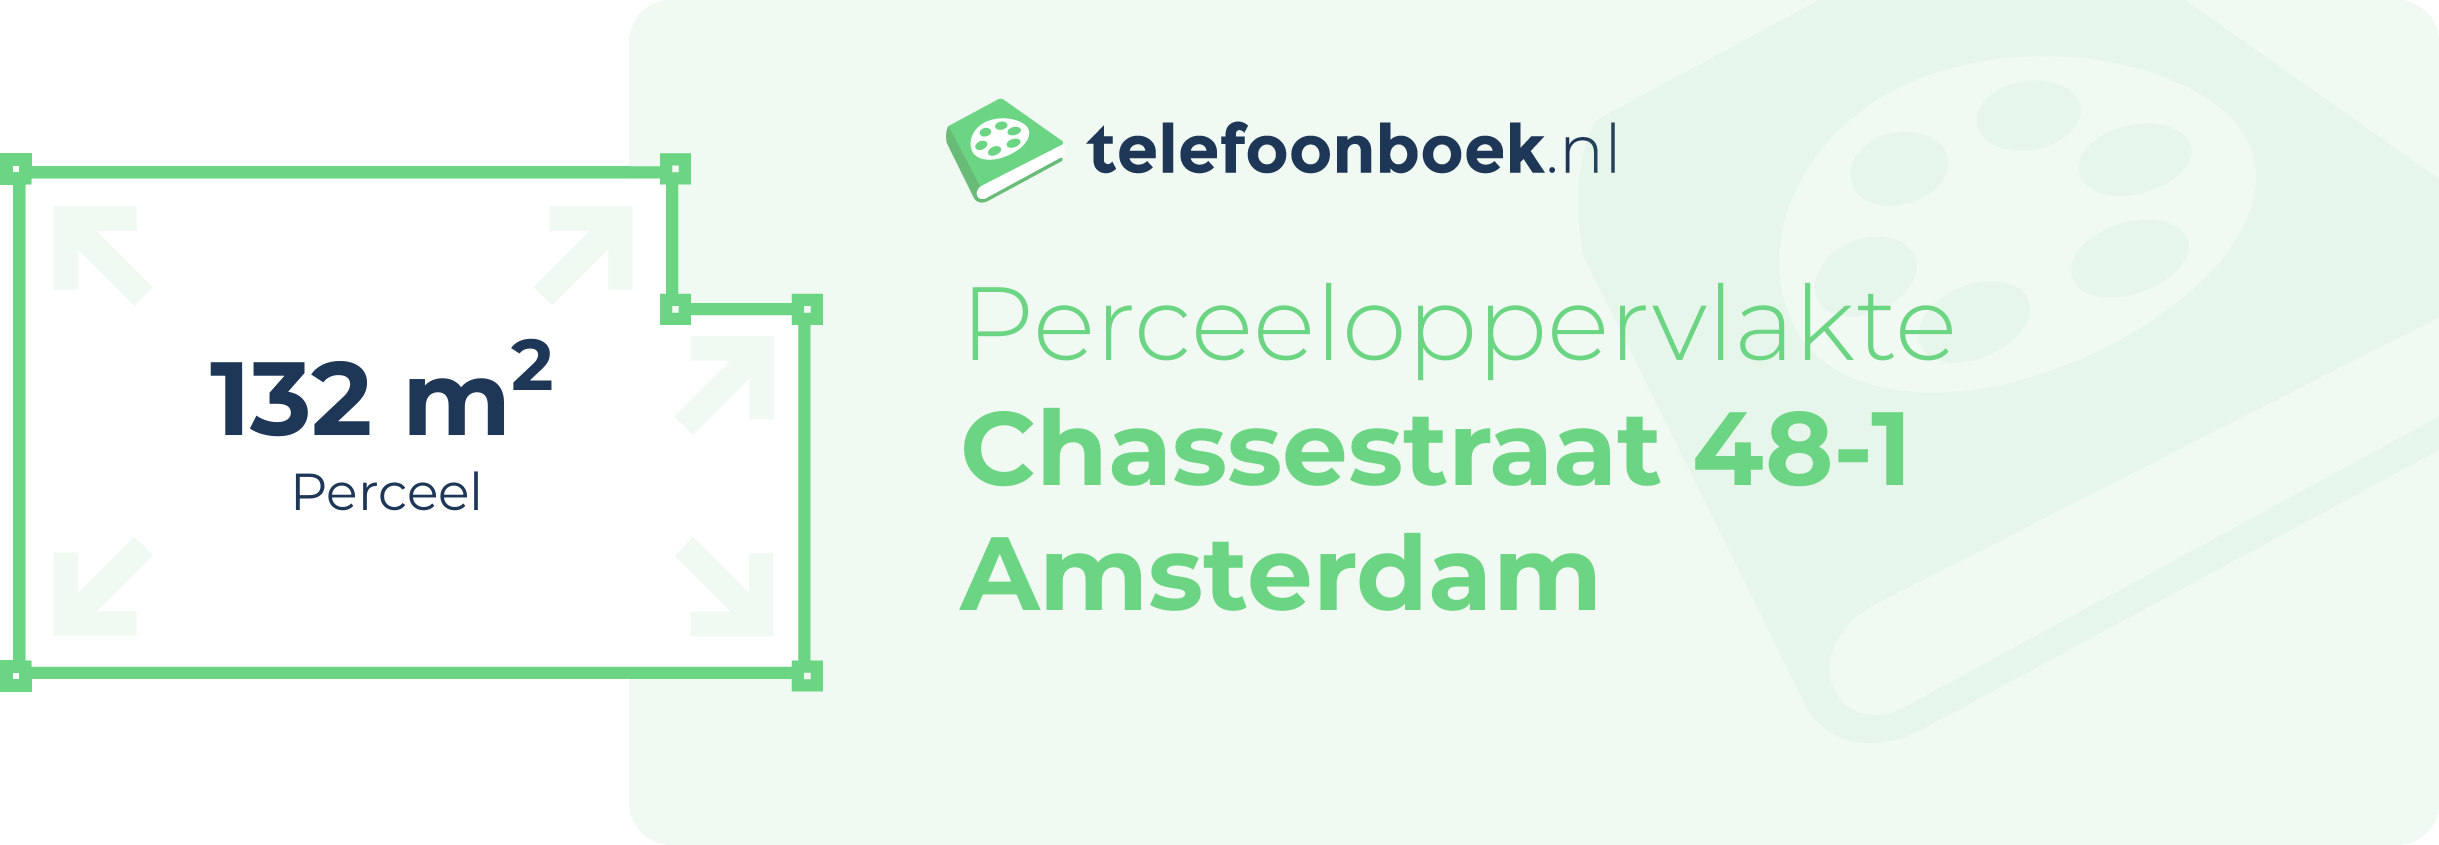 Perceeloppervlakte Chassestraat 48-1 Amsterdam